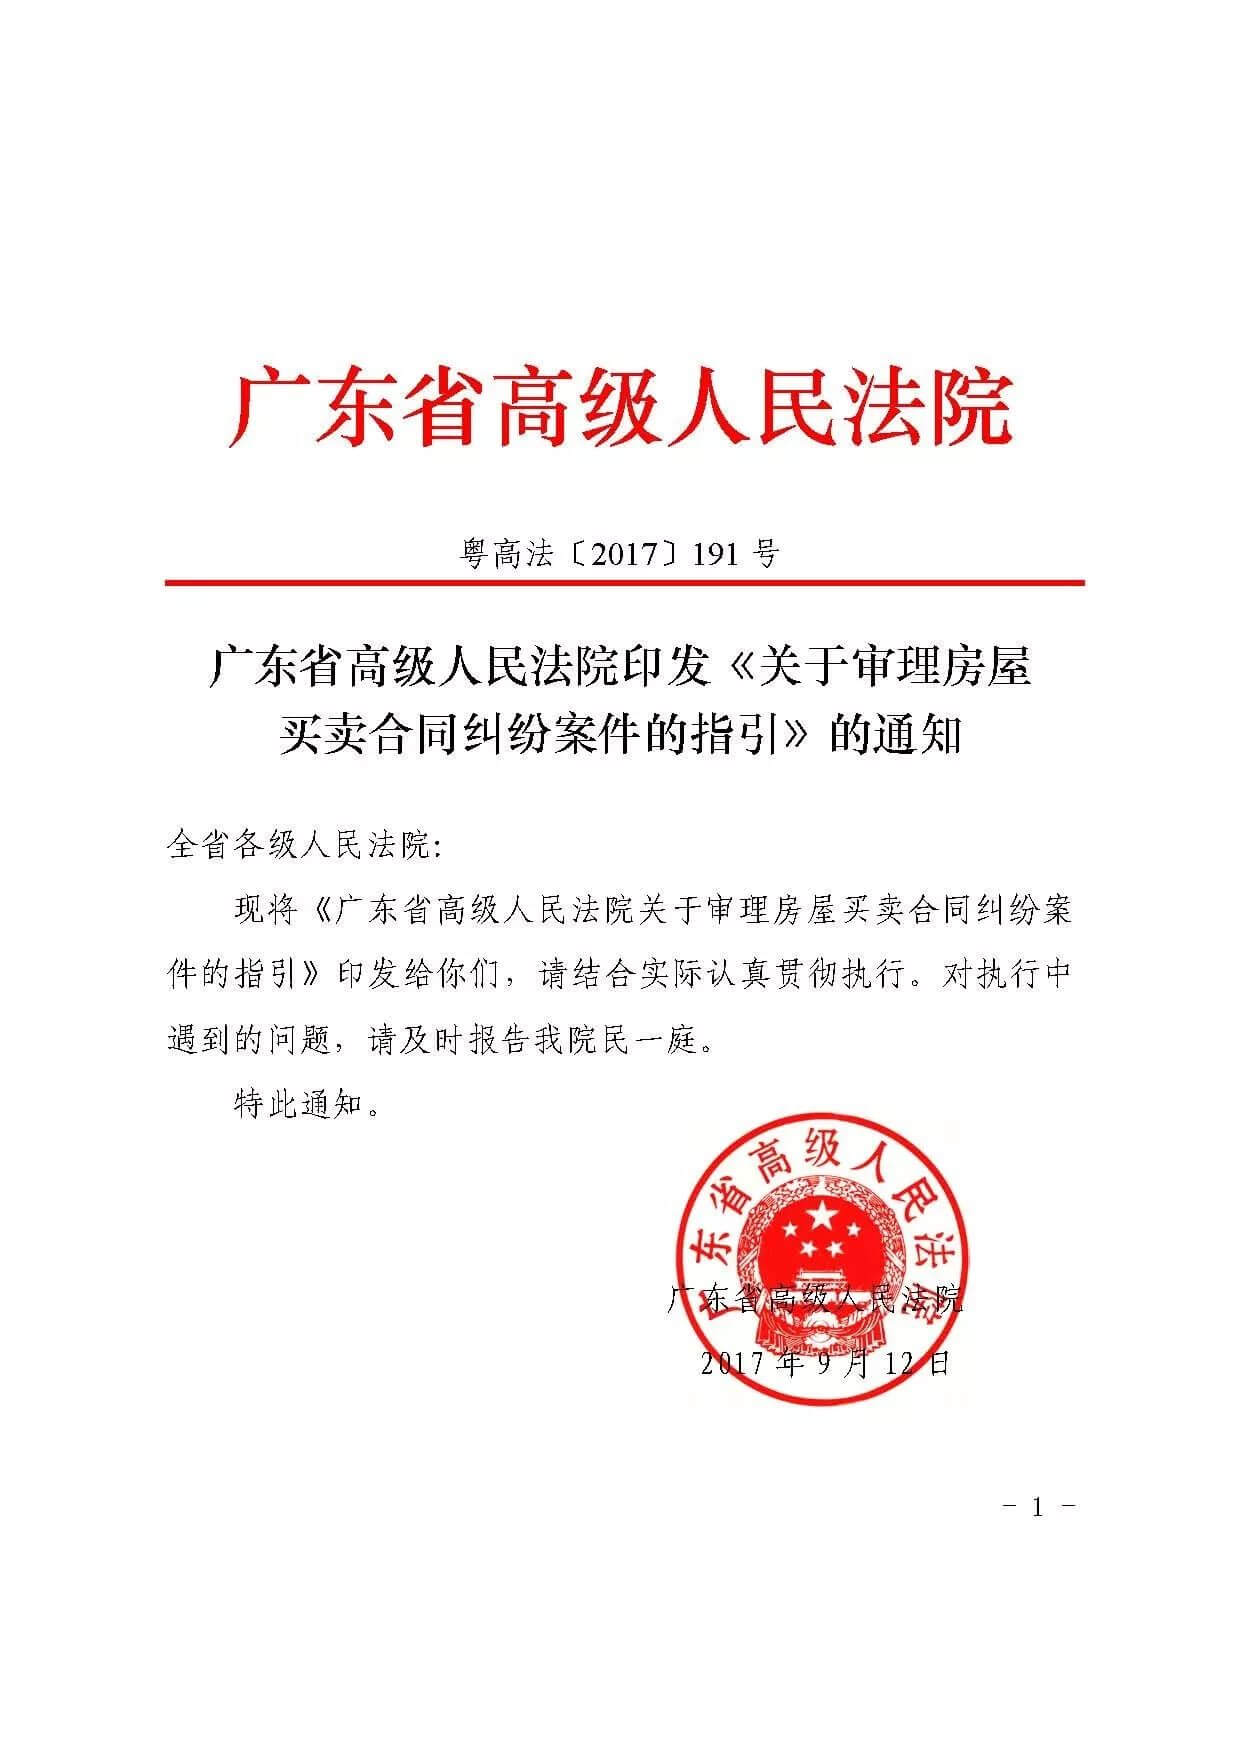 广东高院印发《关于审理房屋买卖合同纠纷案件的指引》的通知